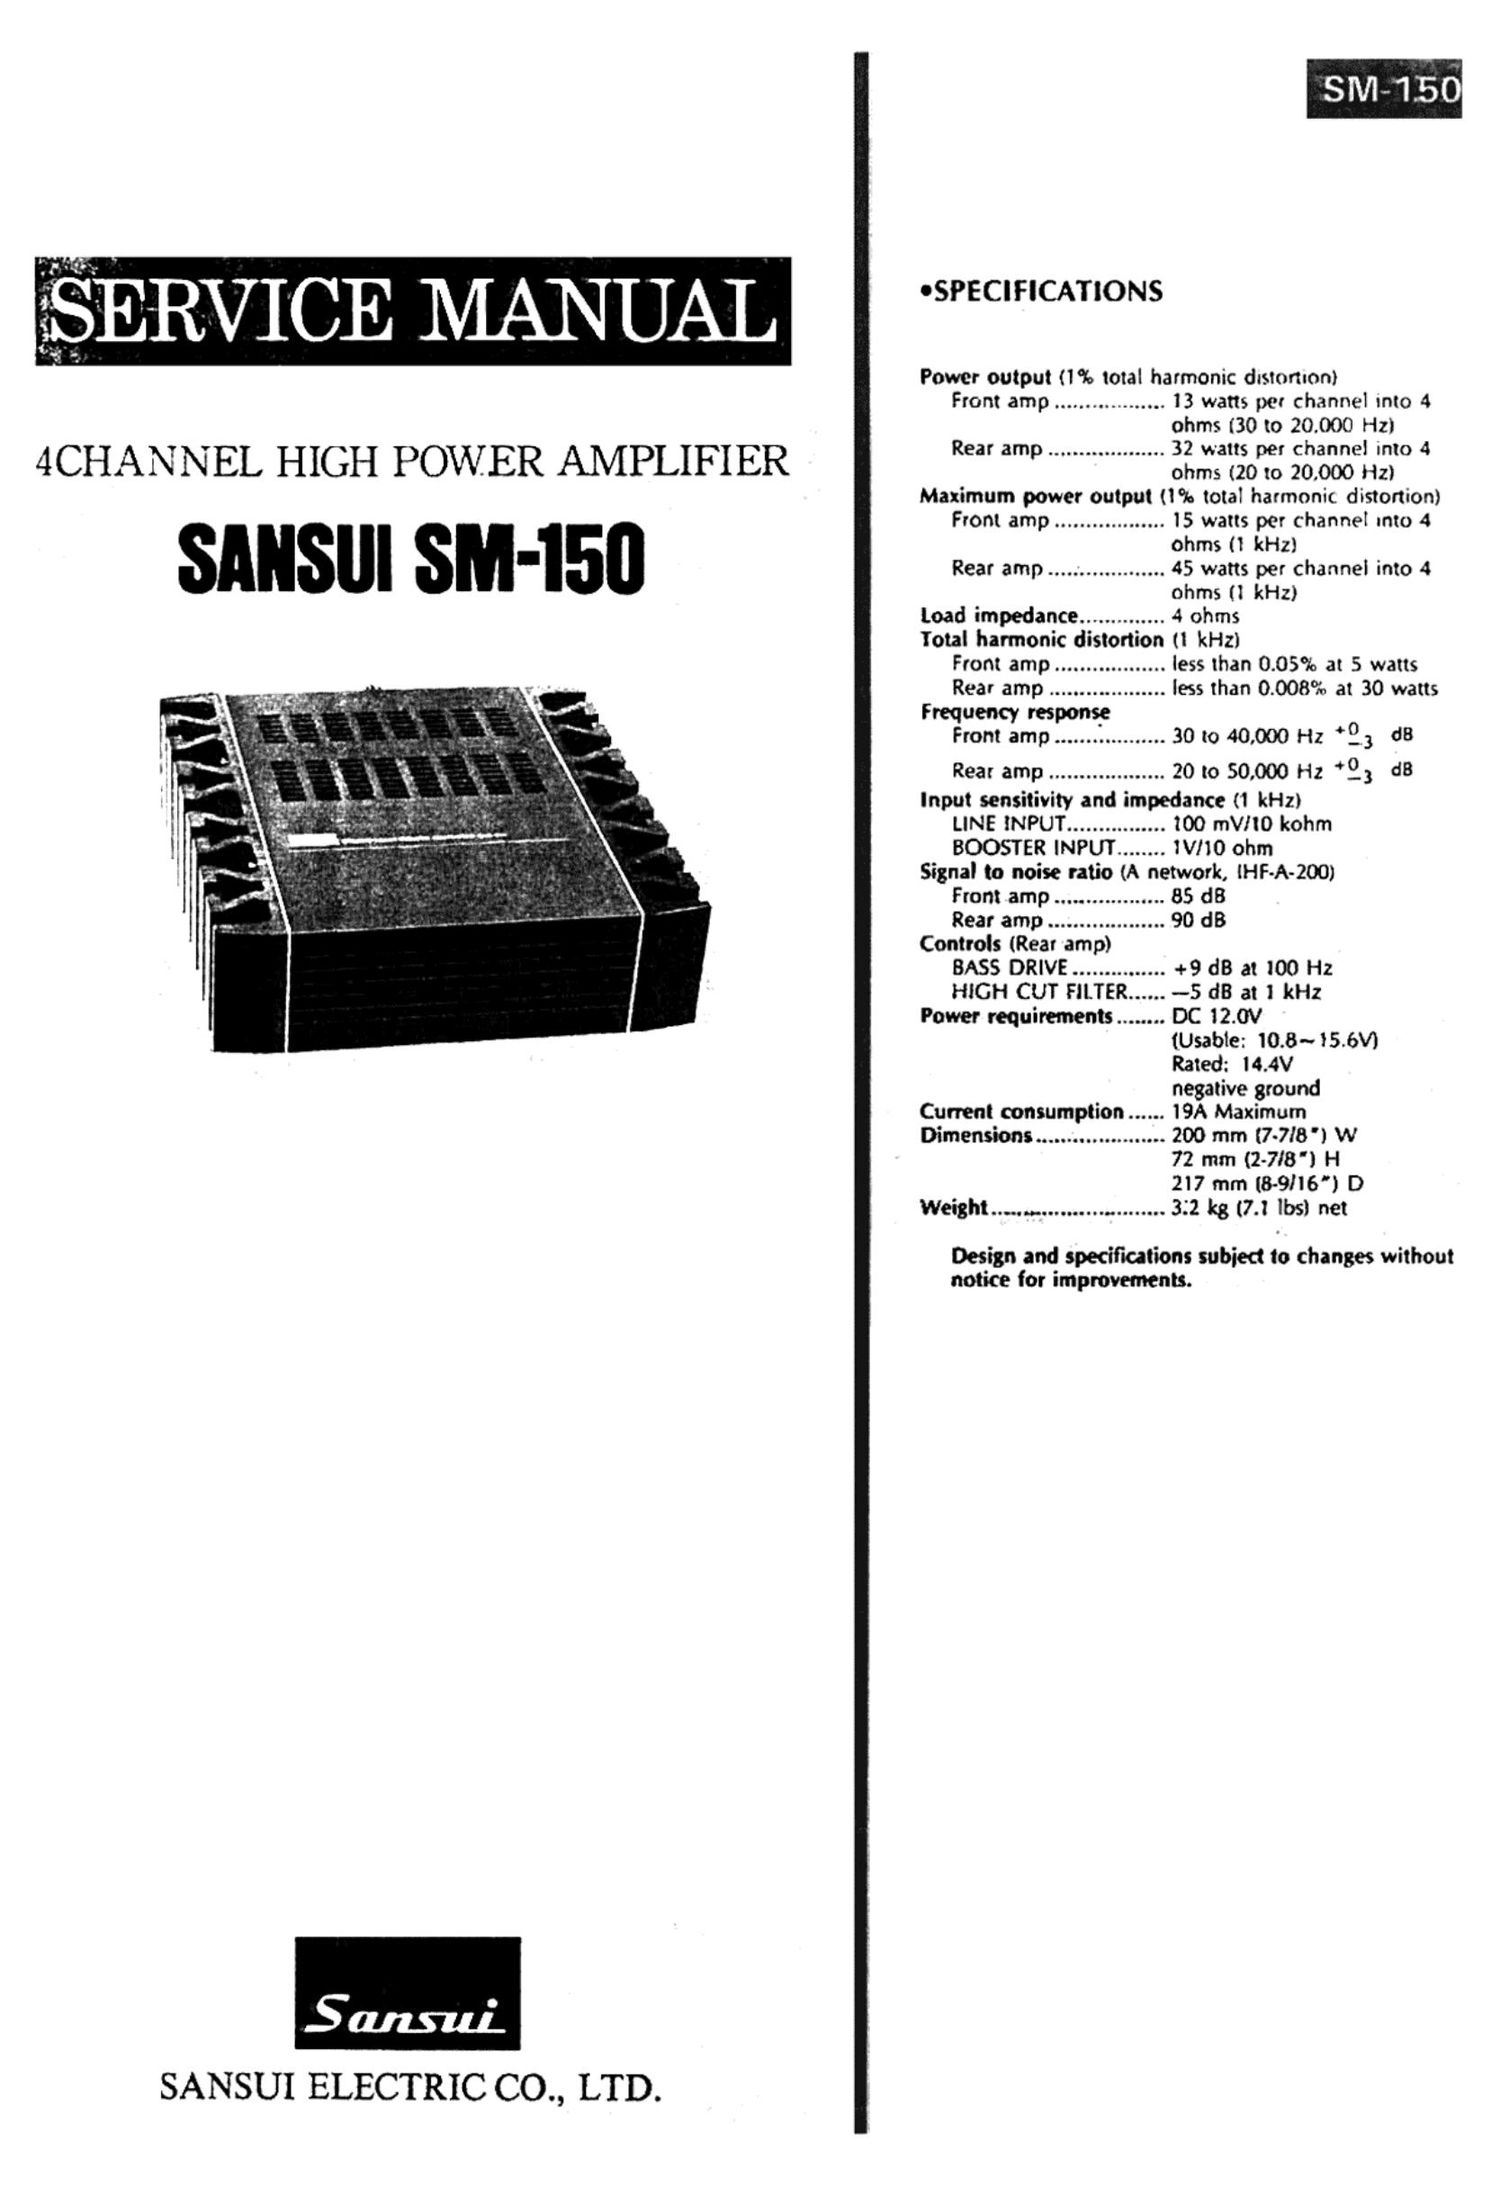 Sansui 150 Service Manual